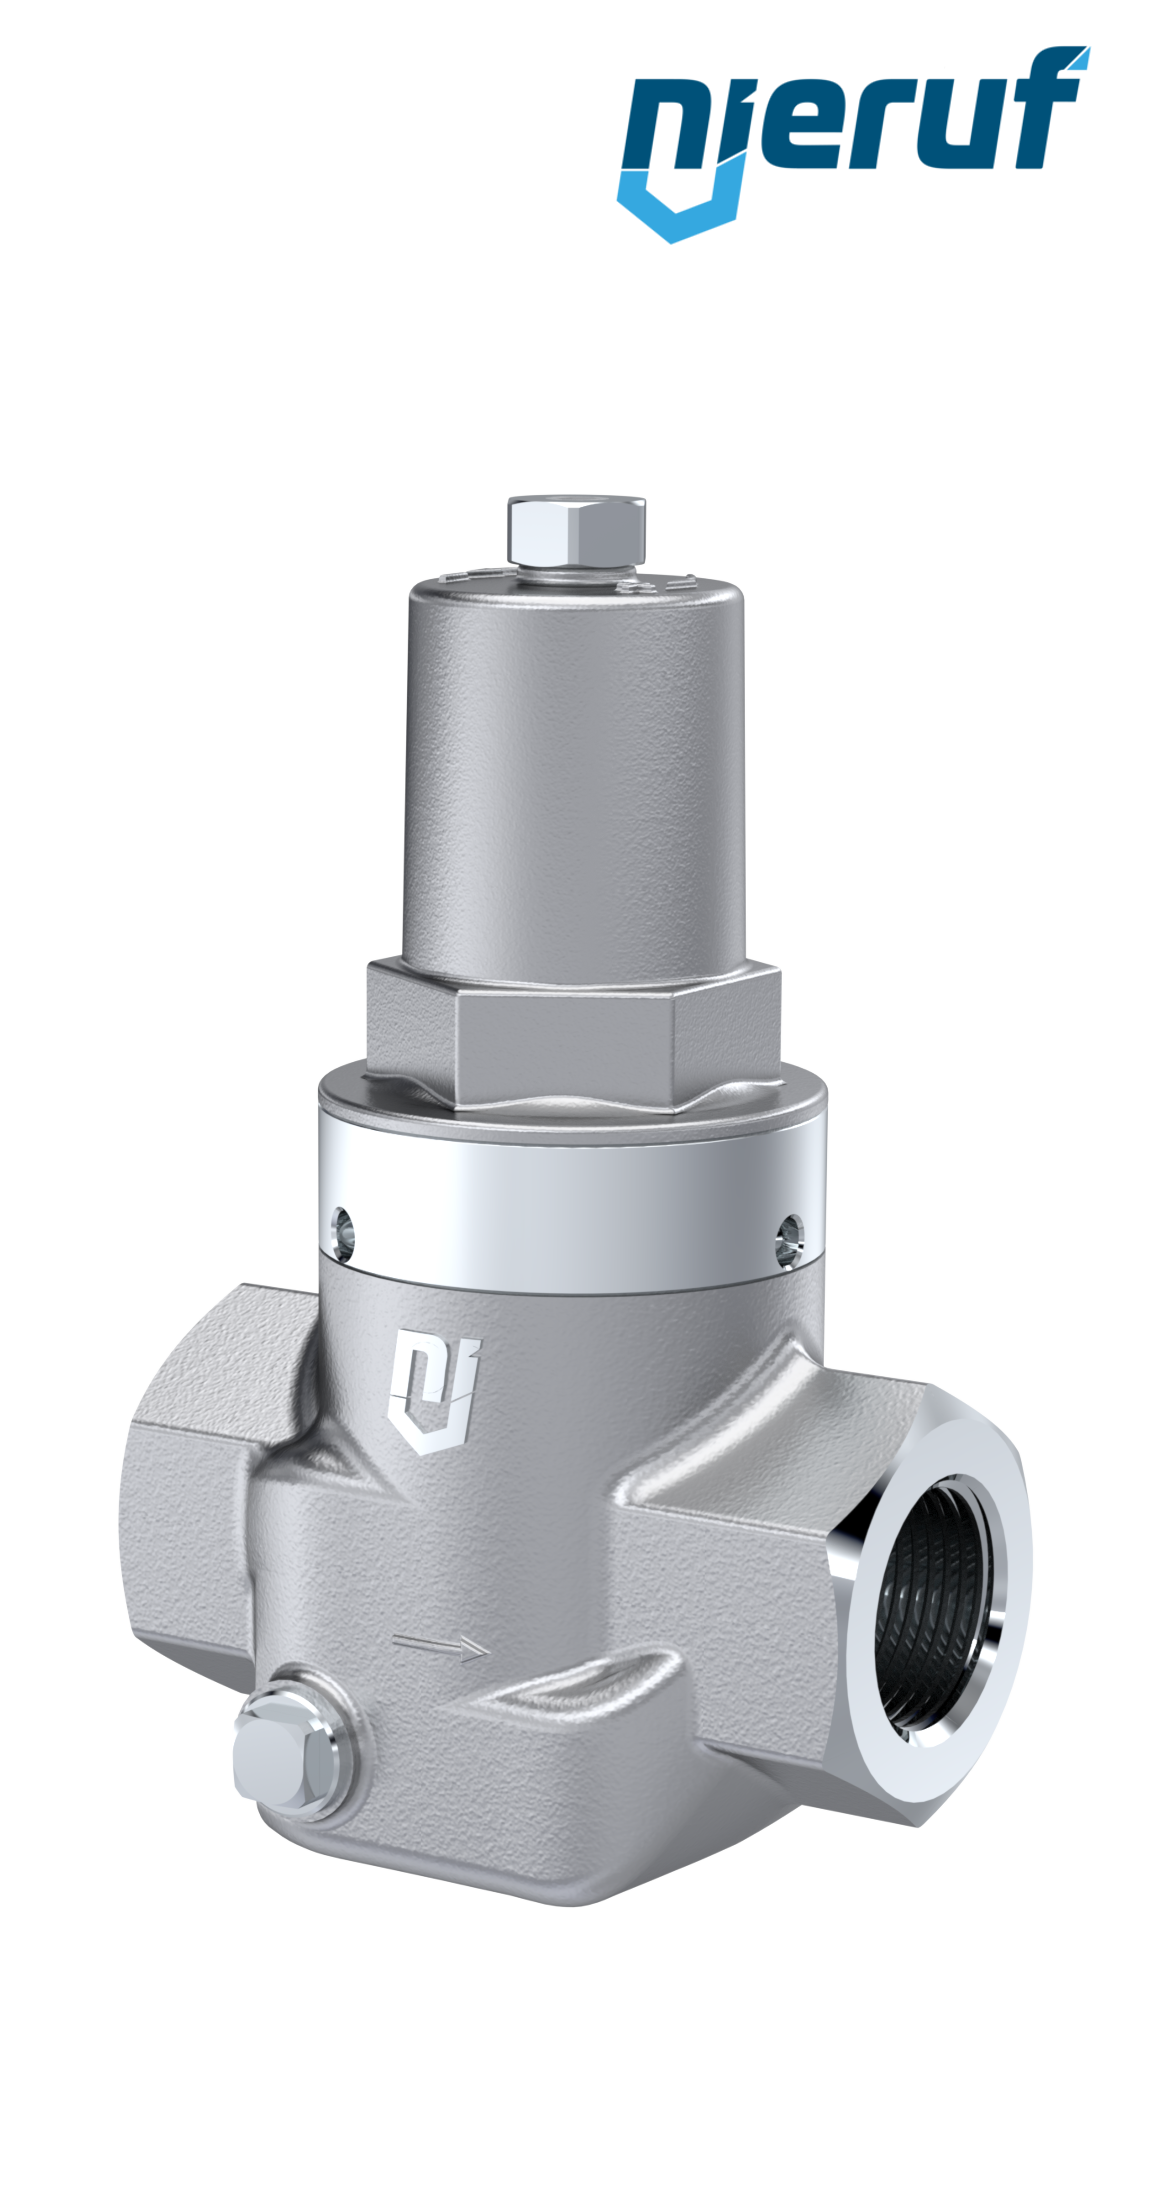 Piston-pressure reducing valve 1/2" Inch DM10 stainless steel FPM / FKM 2.0 - 20.0 bar